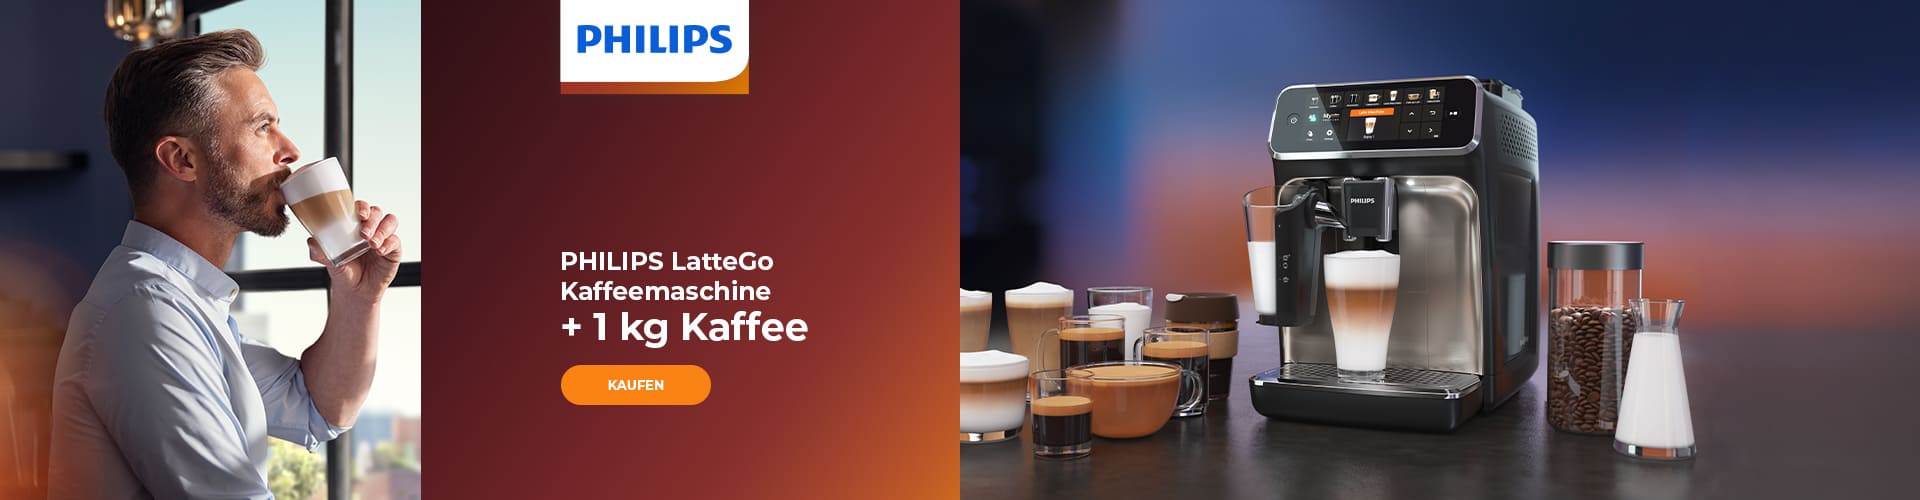 PHILIPS LatteGo Kaffeemaschine + 1 kg Kaffee